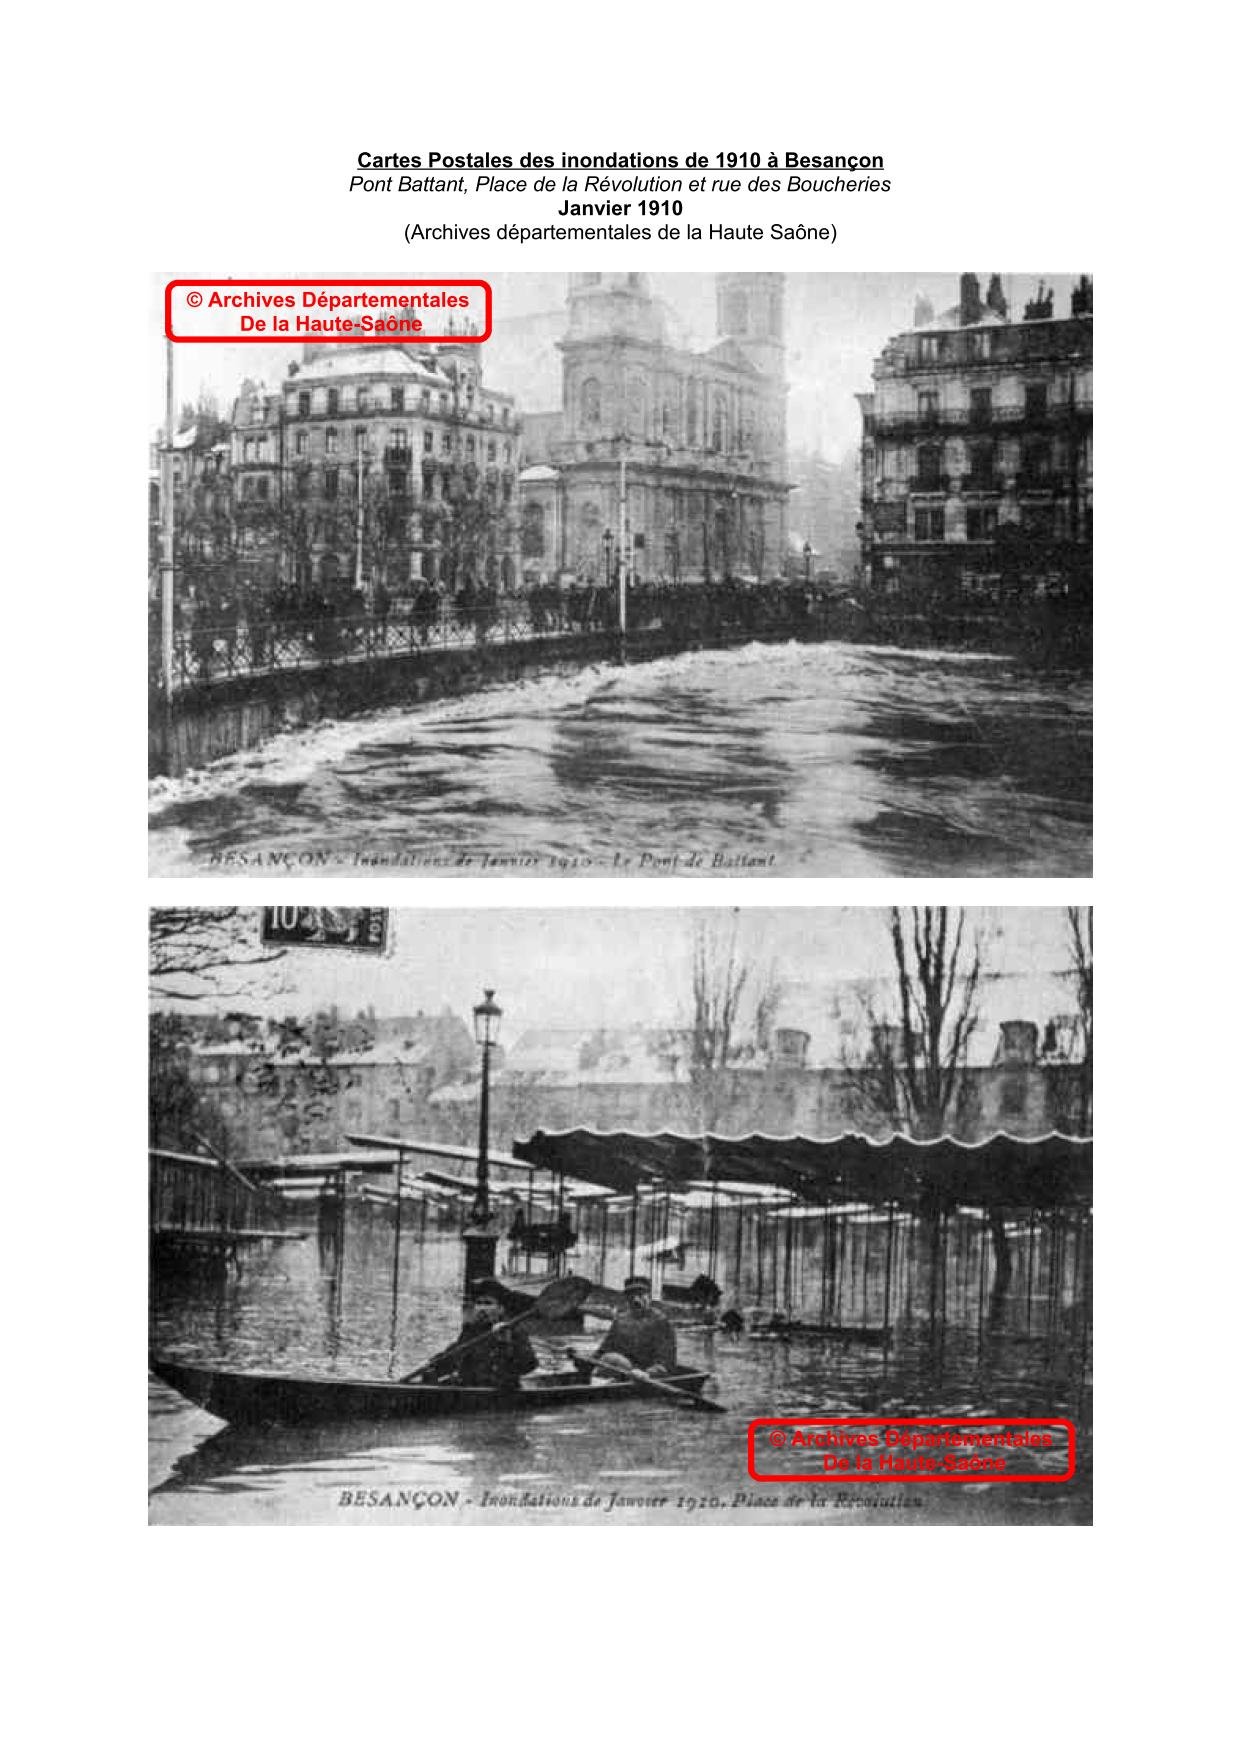 Cartes Postales des inondations de 1910 a Besançon : Pont Battant, rue des Boucheries et place du Marche